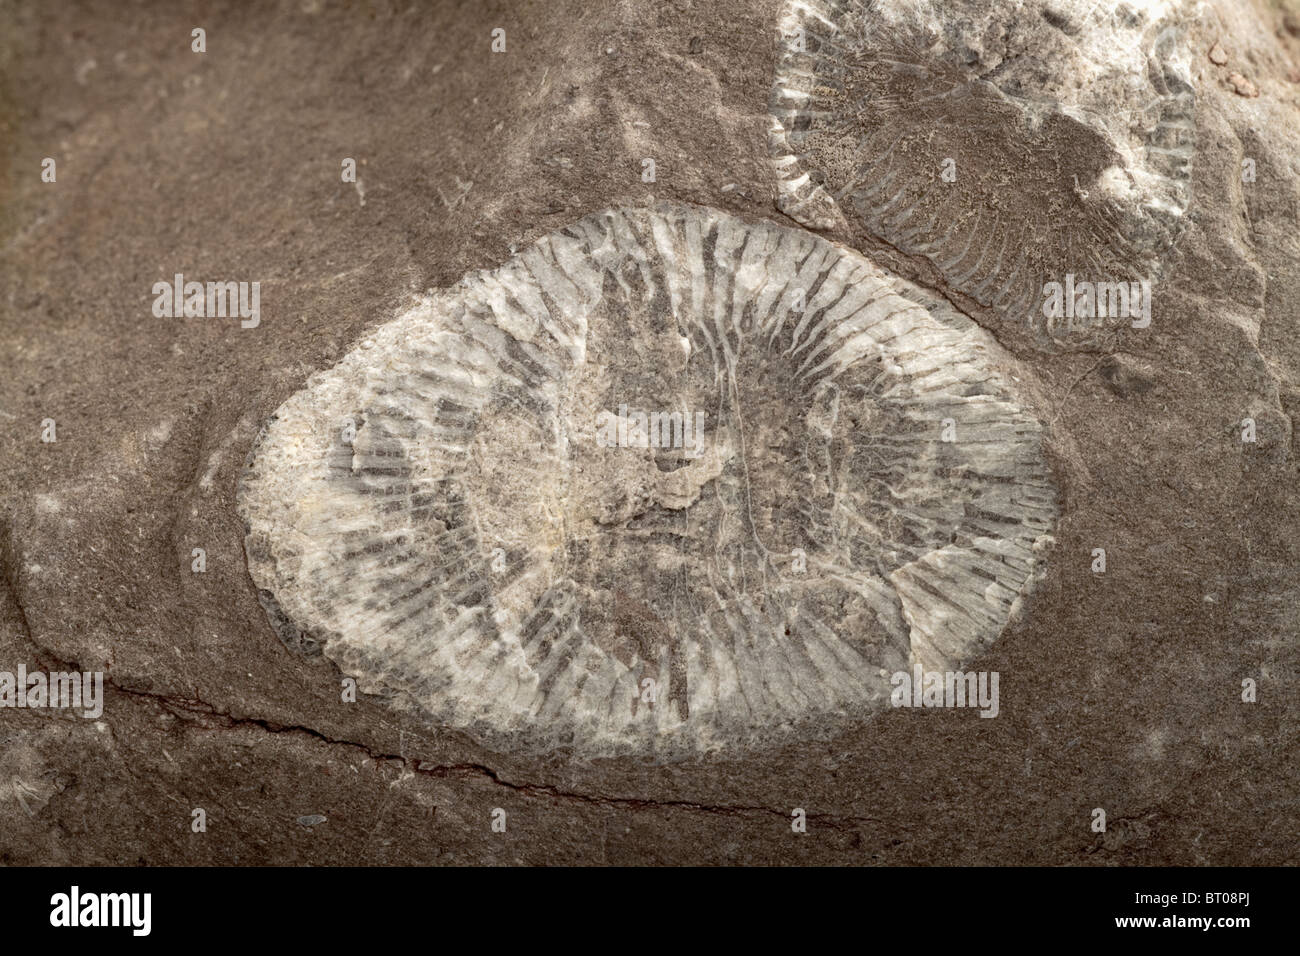 Conchiglie fossilizzate di clam, trovate incorporate in una roccia da giardino Foto Stock